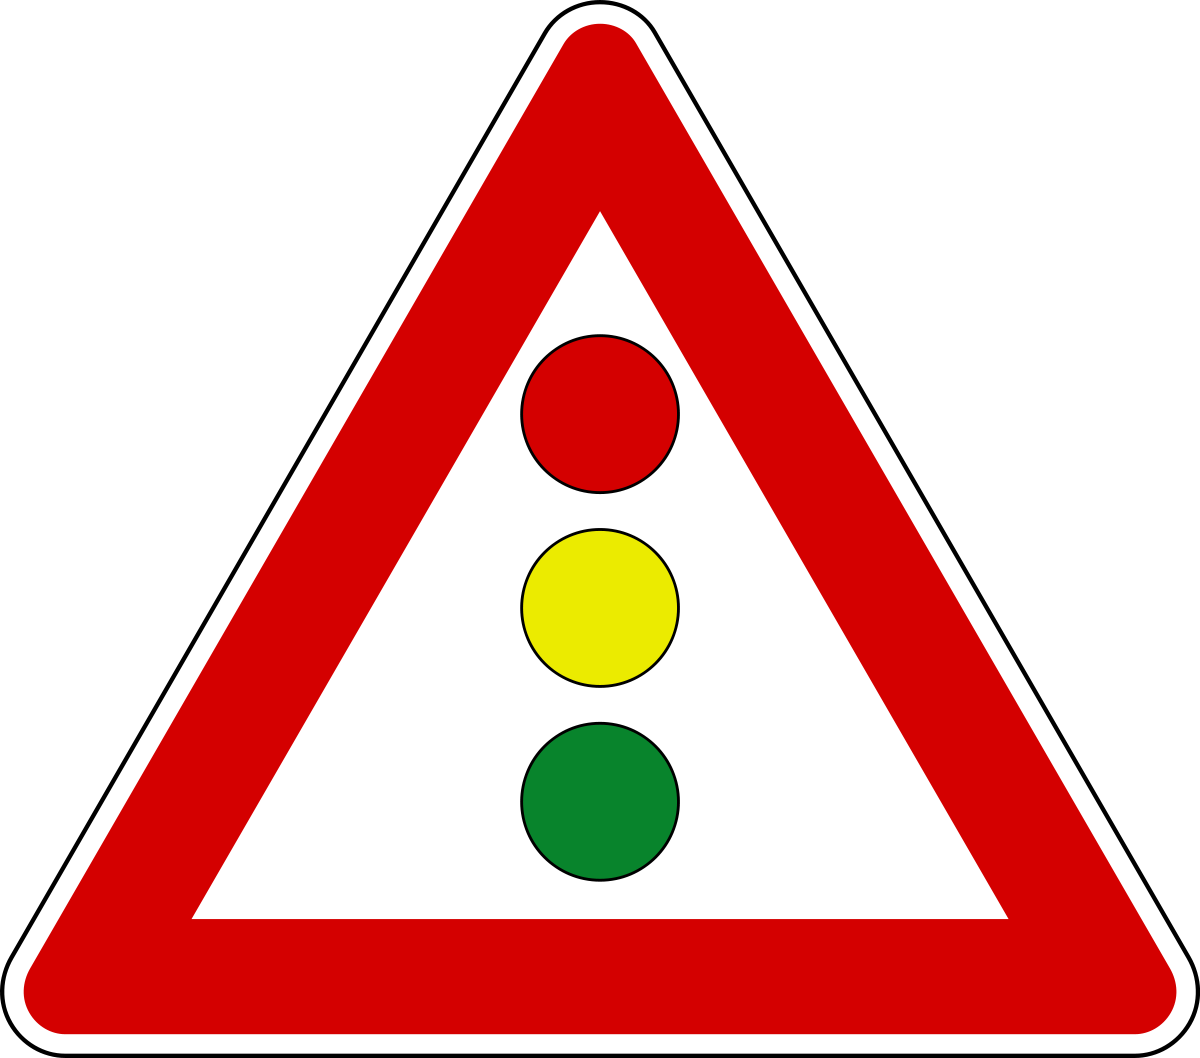 File:Italian traffic signs - semaforo verticale.svg - Wikimedia